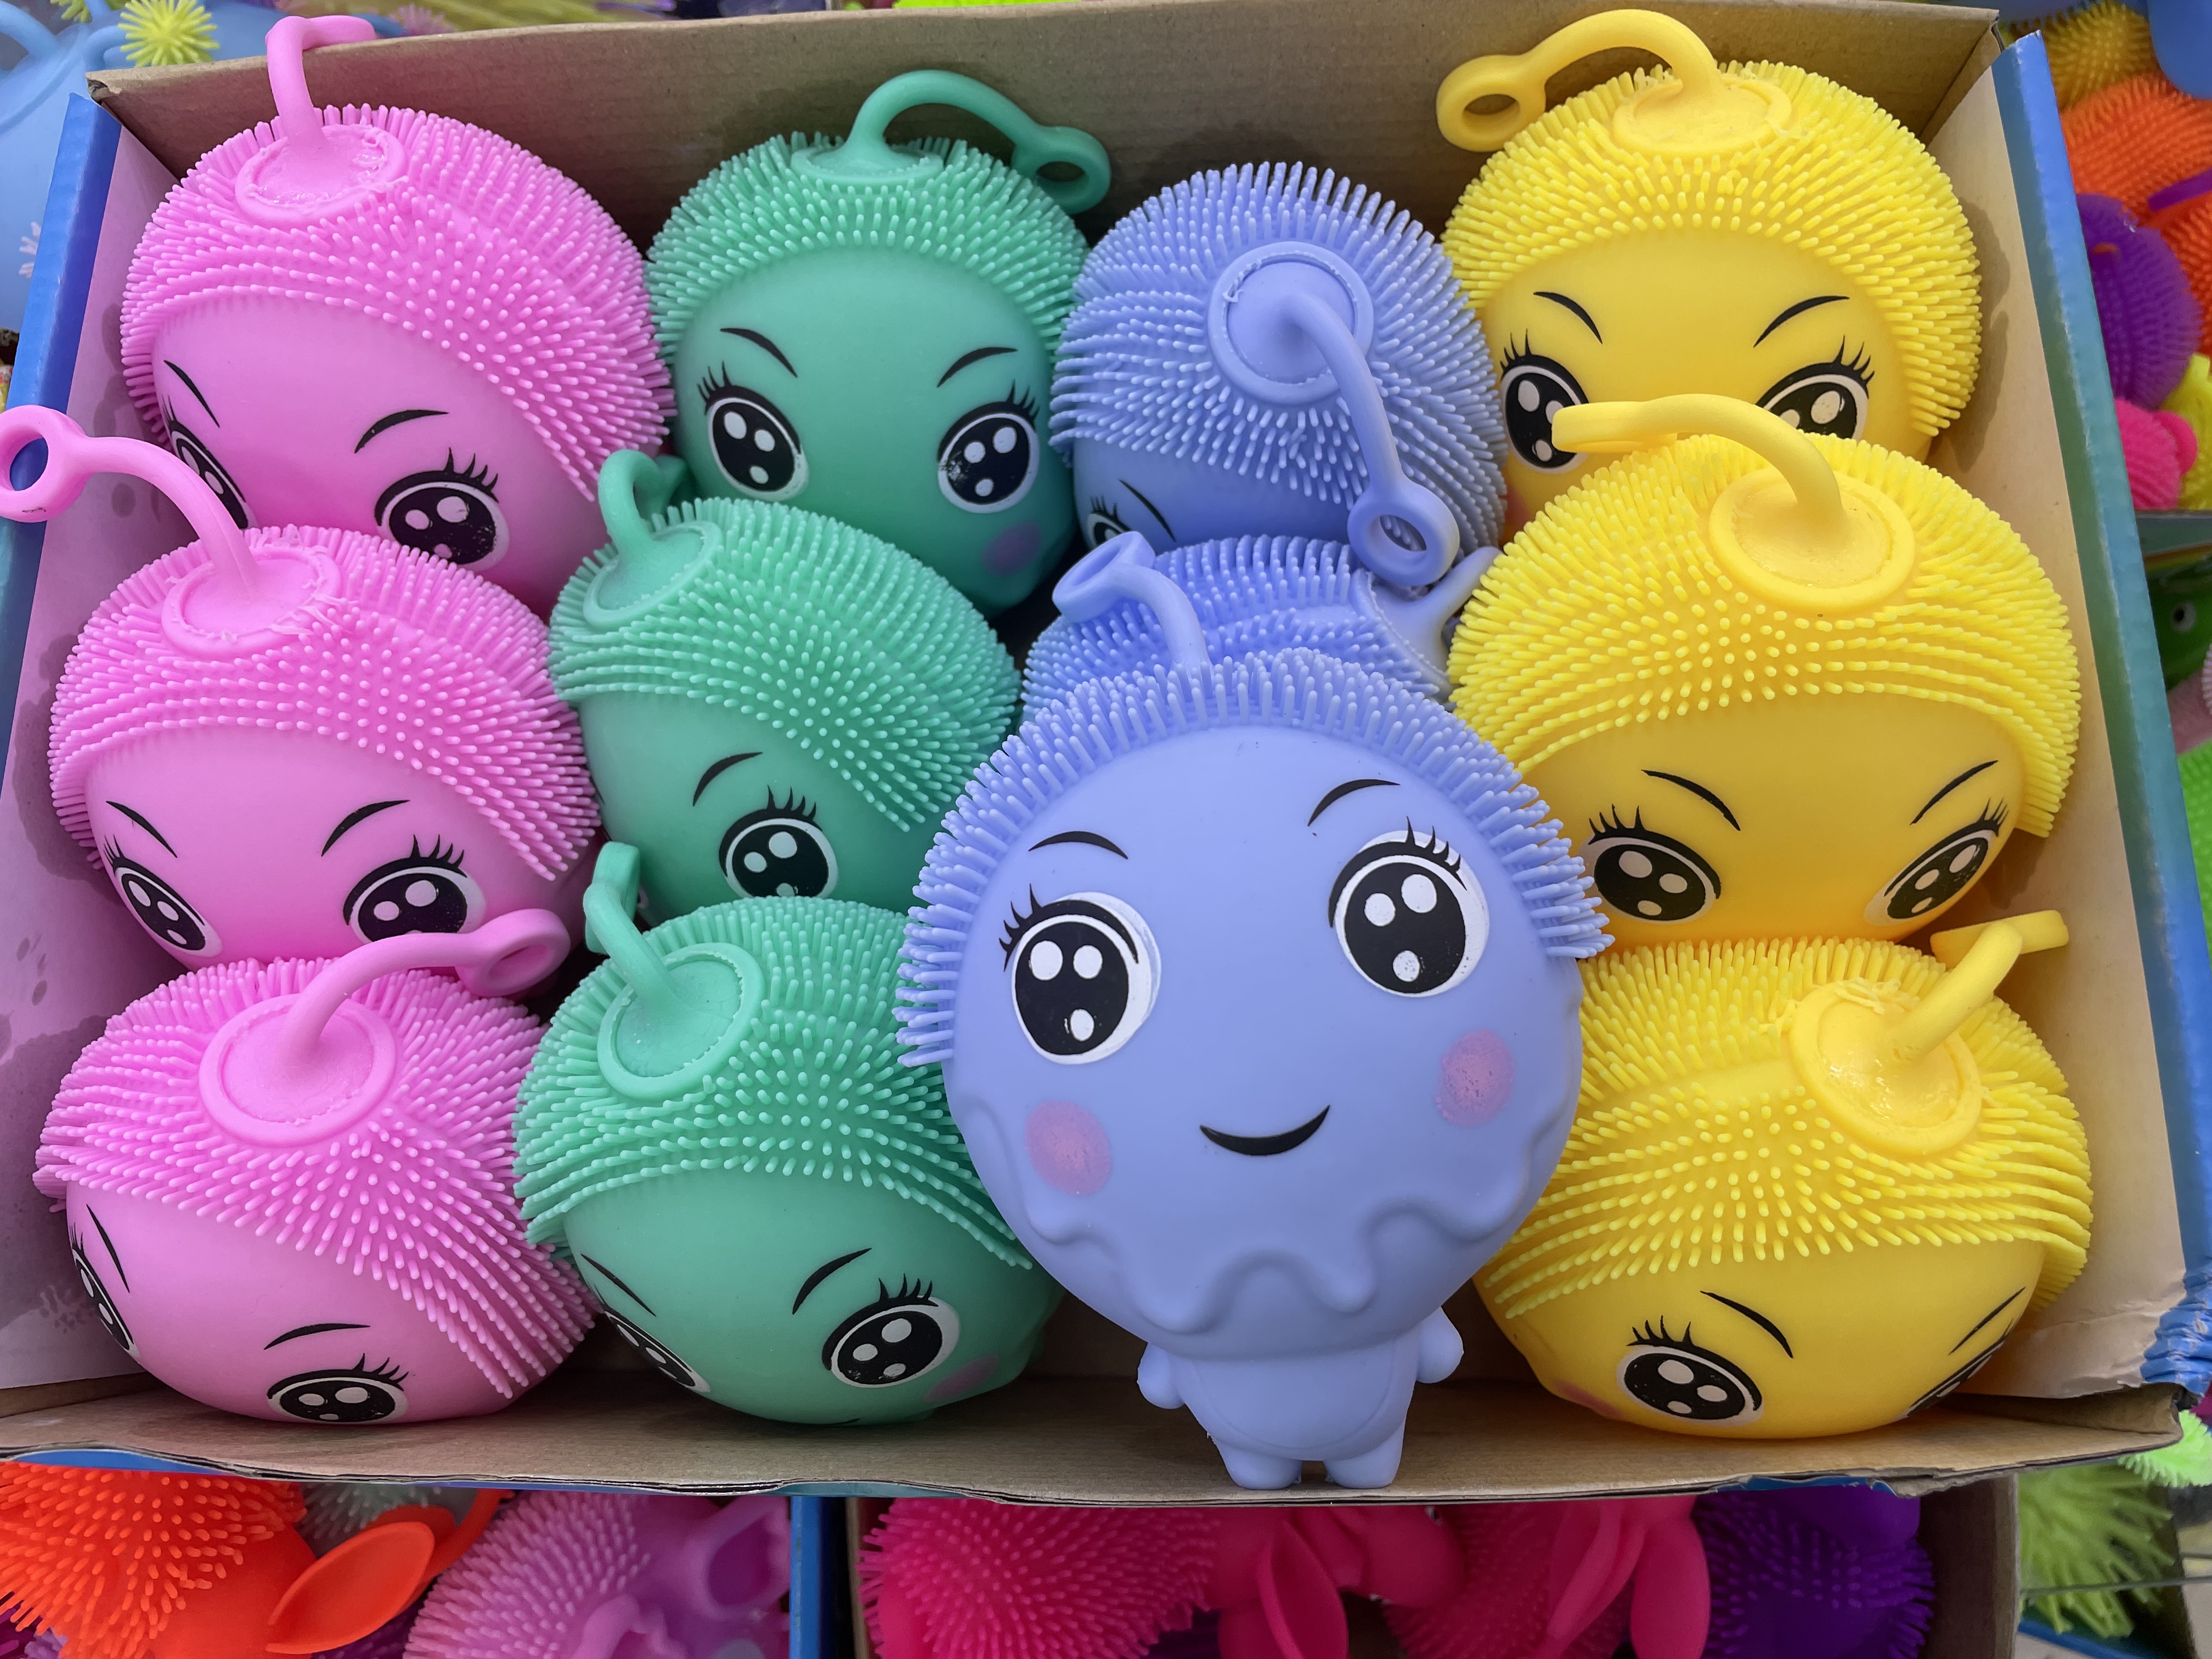 新款毛球闪光玩具 休闲玩具 发光玩具4色混装详情图1